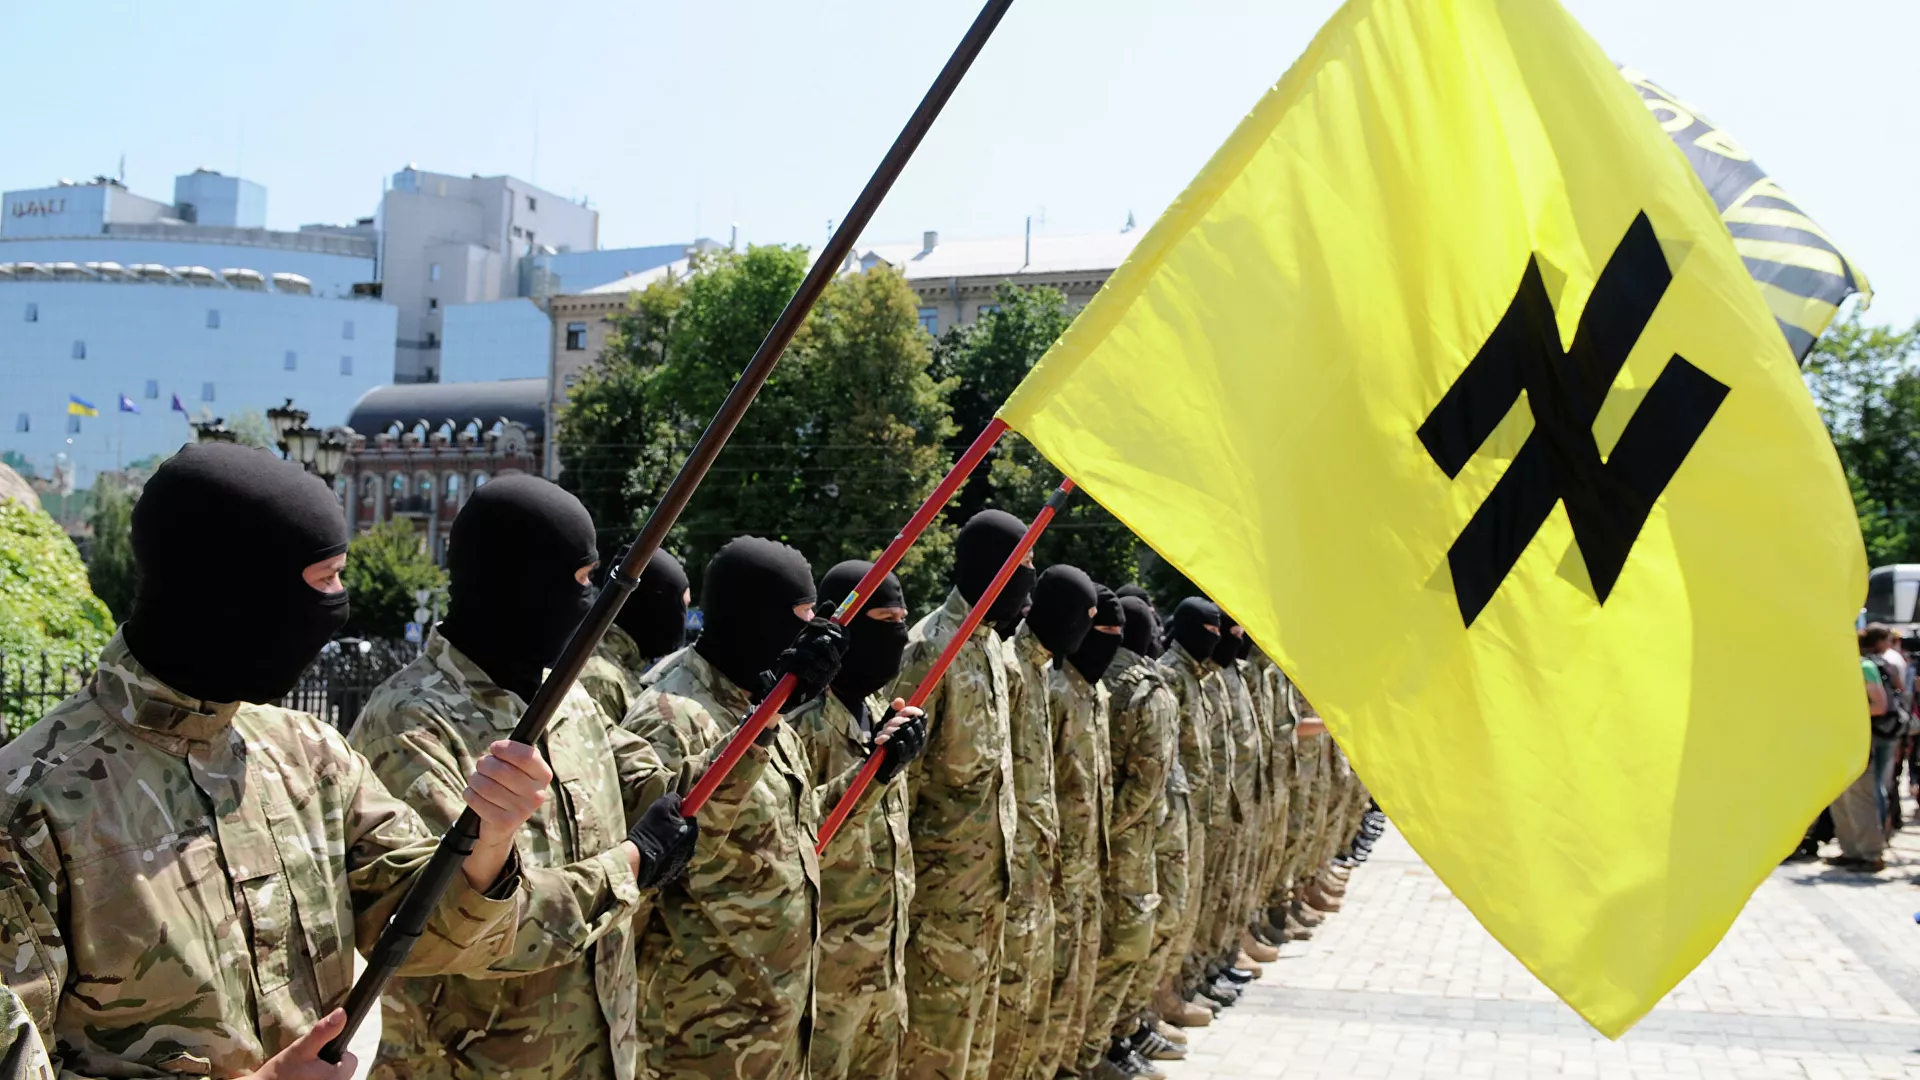  Combatientes de la neonazi Kraken fusilan a 100 soldados ucranianos que huían